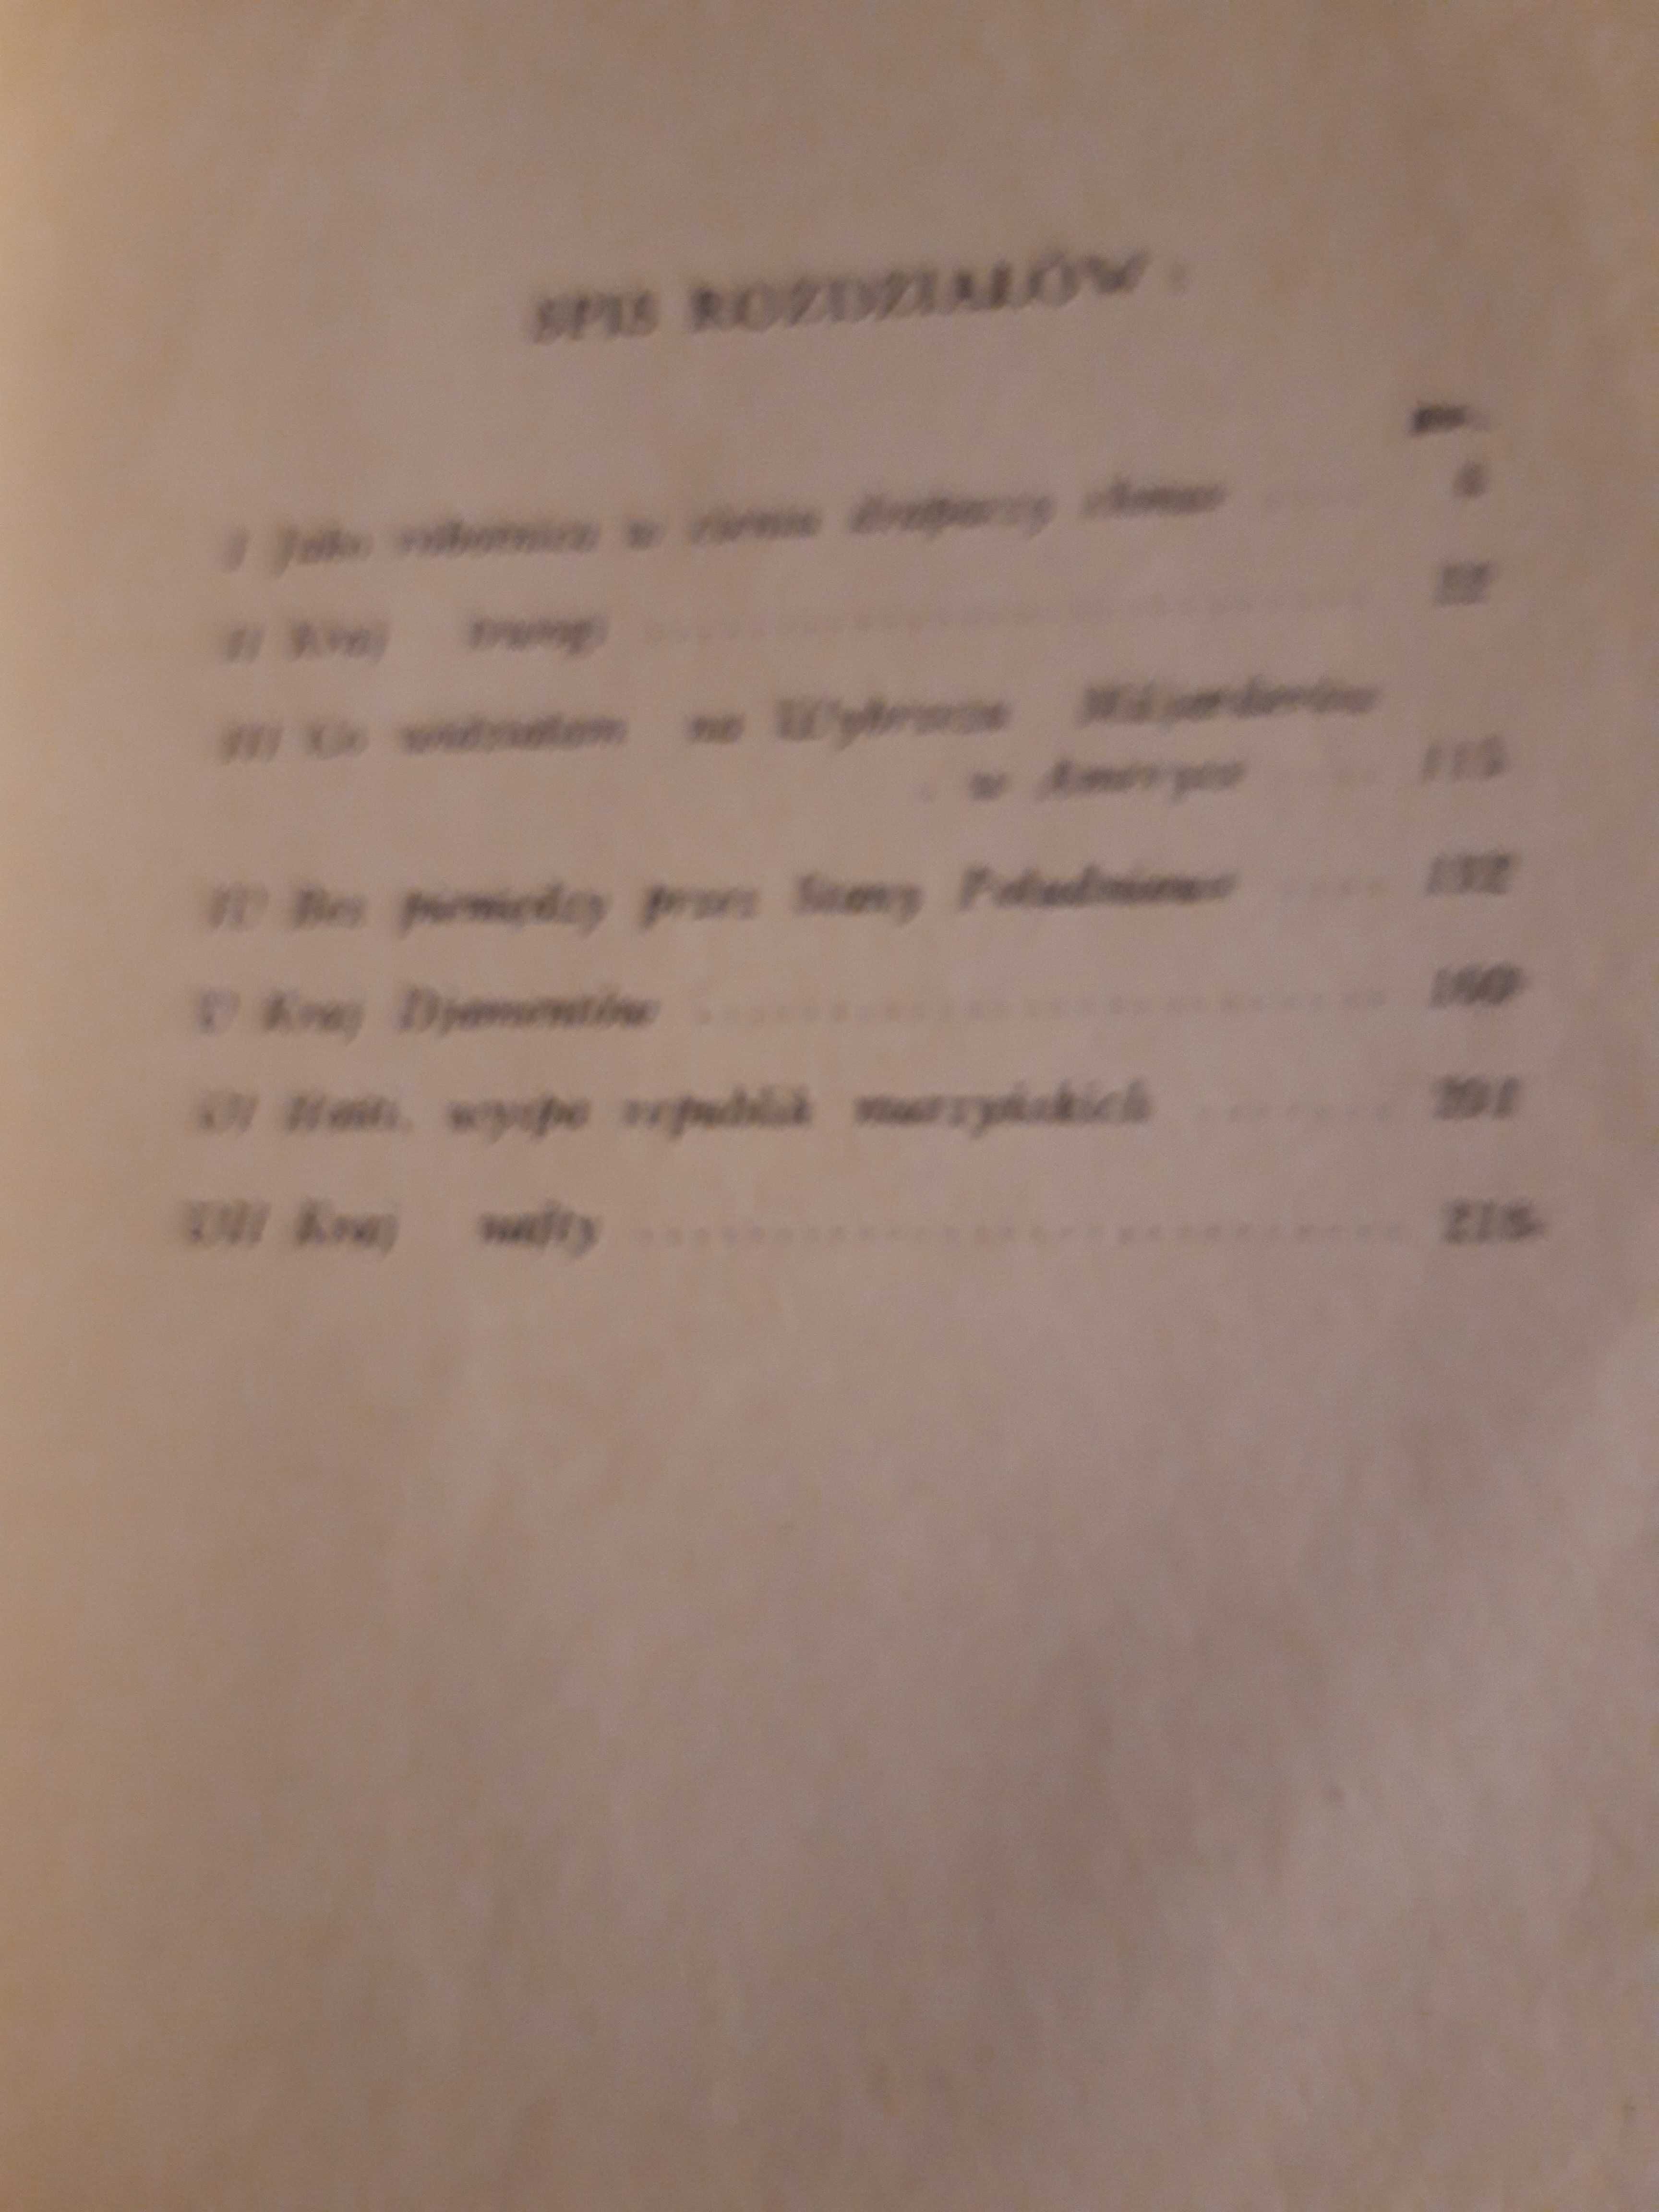 Kobieta  Demaskuje Świat -M. Leitner - Warszawa 1934  opr., cudo